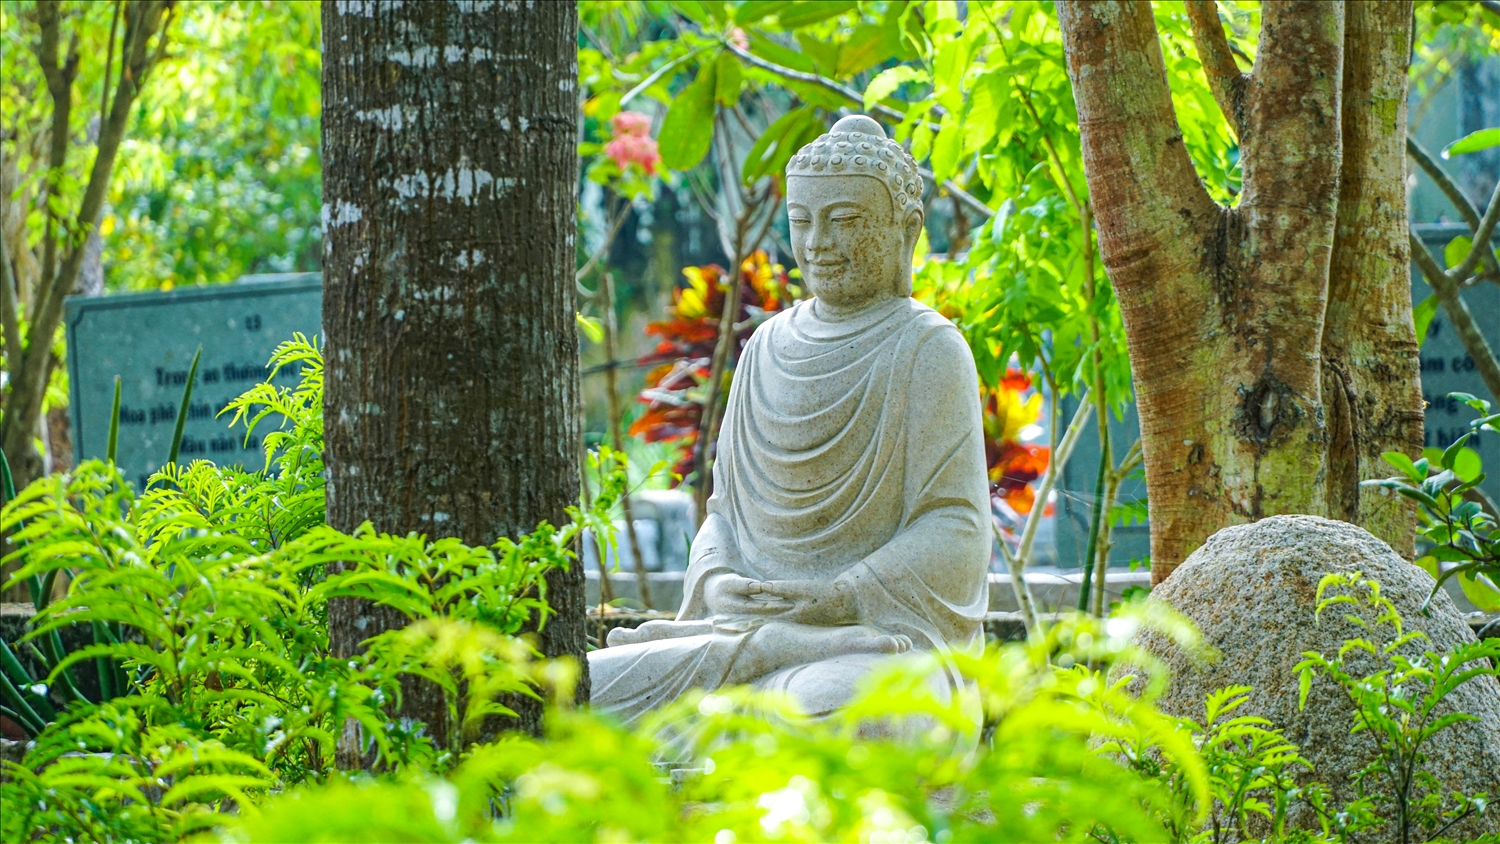 Trong khuôn viên Tổ đình có rất nhiều tượng Phật bằng đá được điêu khắc tỉ mỉ tinh tế